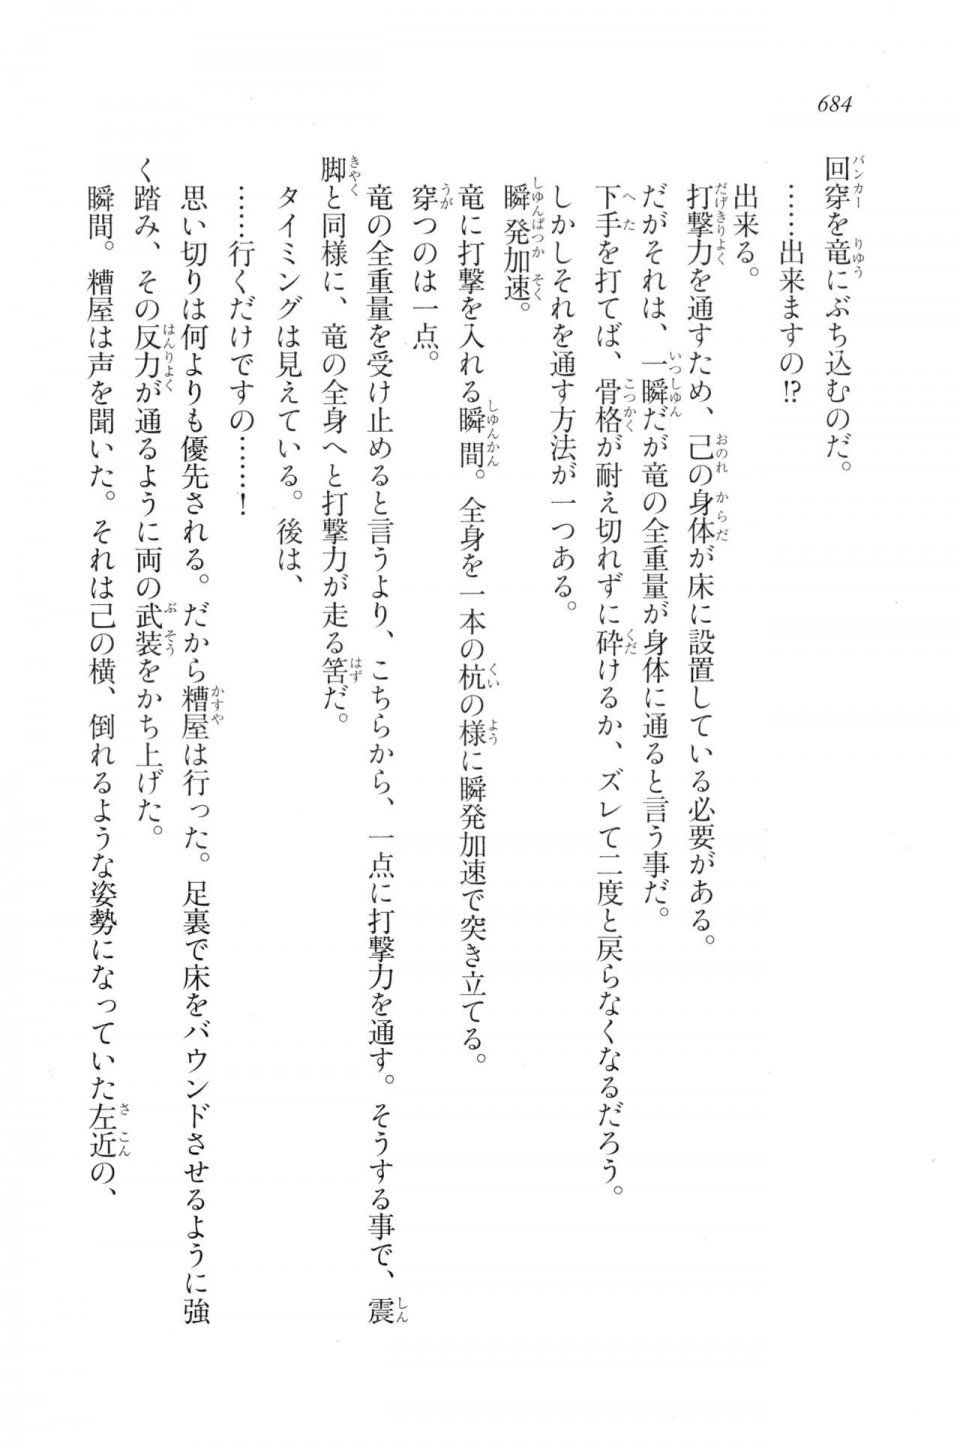 Kyoukai Senjou no Horizon LN Vol 20(8B) - Photo #684